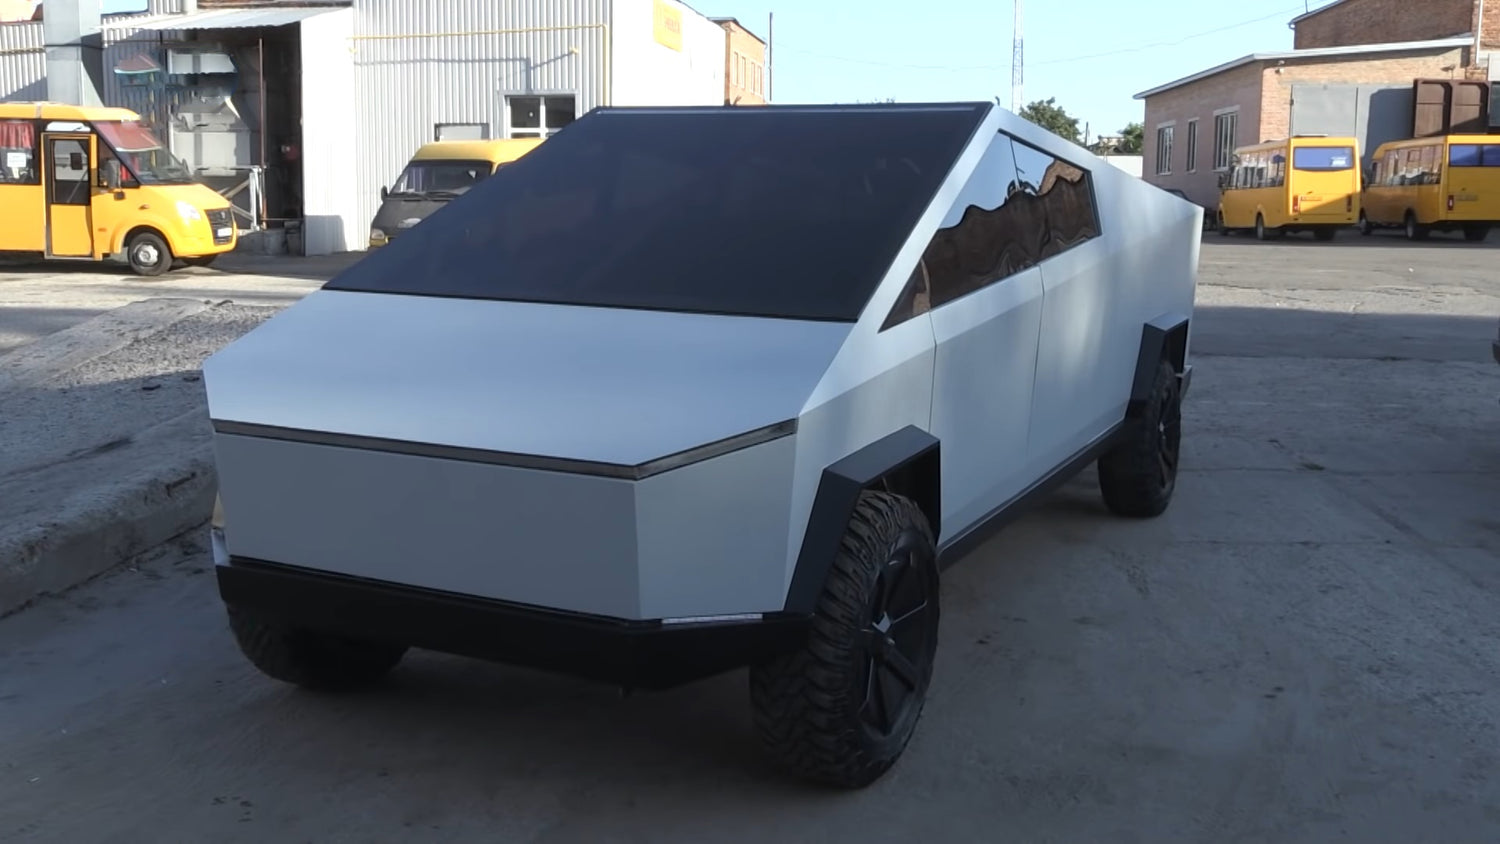 Tesla Fan Built The First Cybertruck Replica in Ukraine